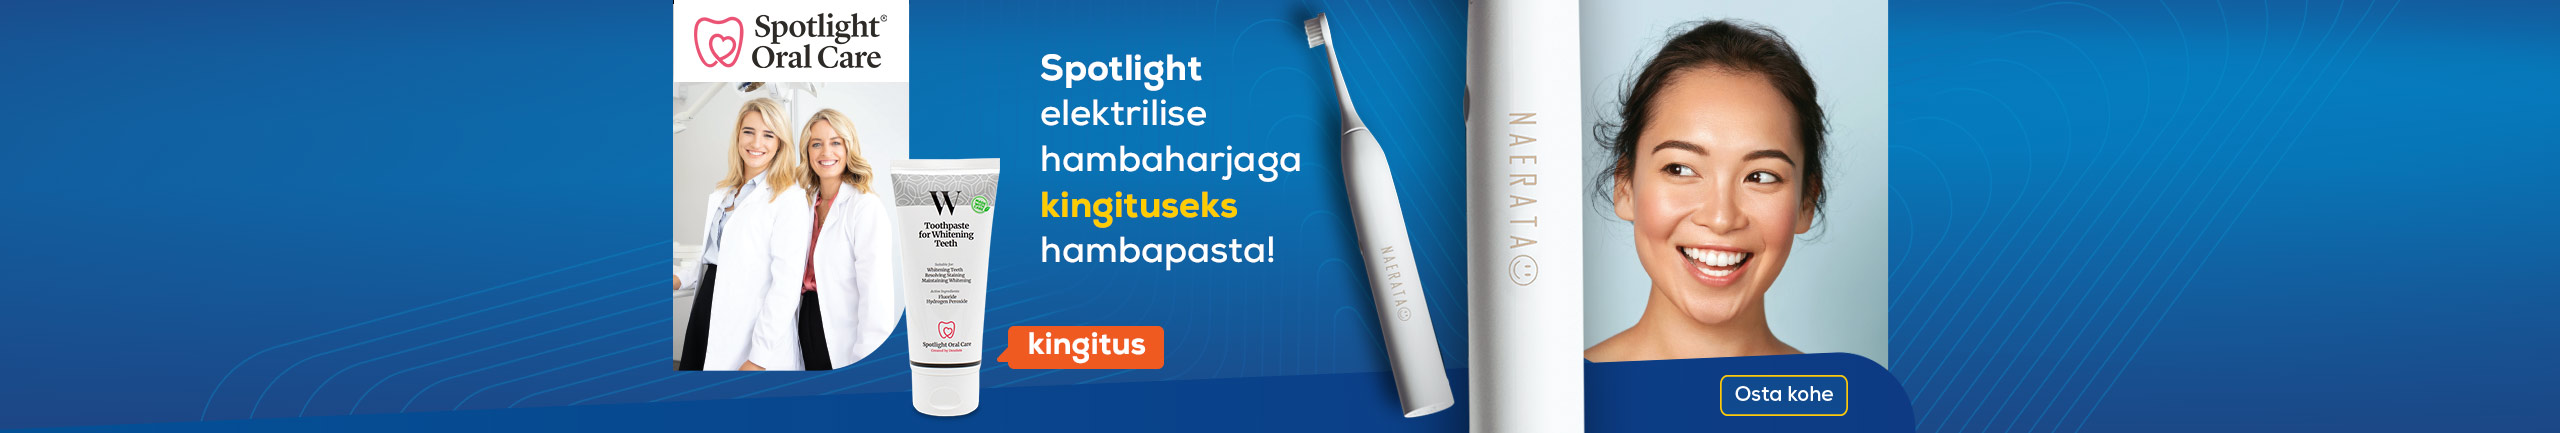 Spotlight elektrilise hambaharjaga kingituseks hambapasta!